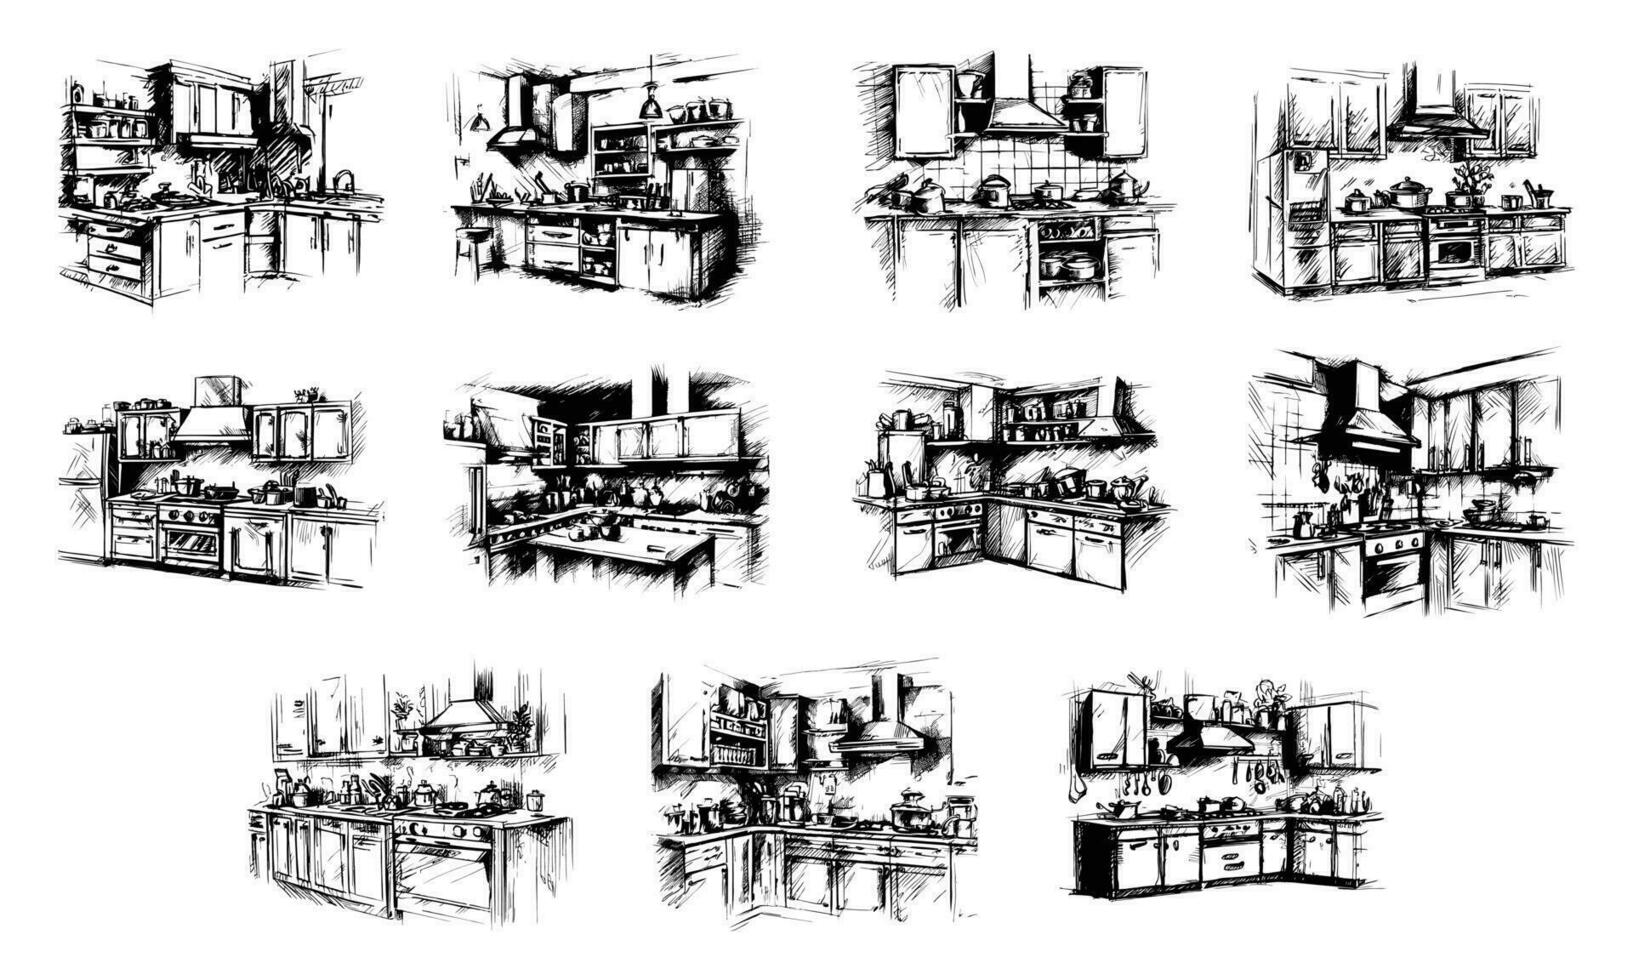 keuken reeks meubilair interieur schetsen hand- tekening stijl illustratie vector